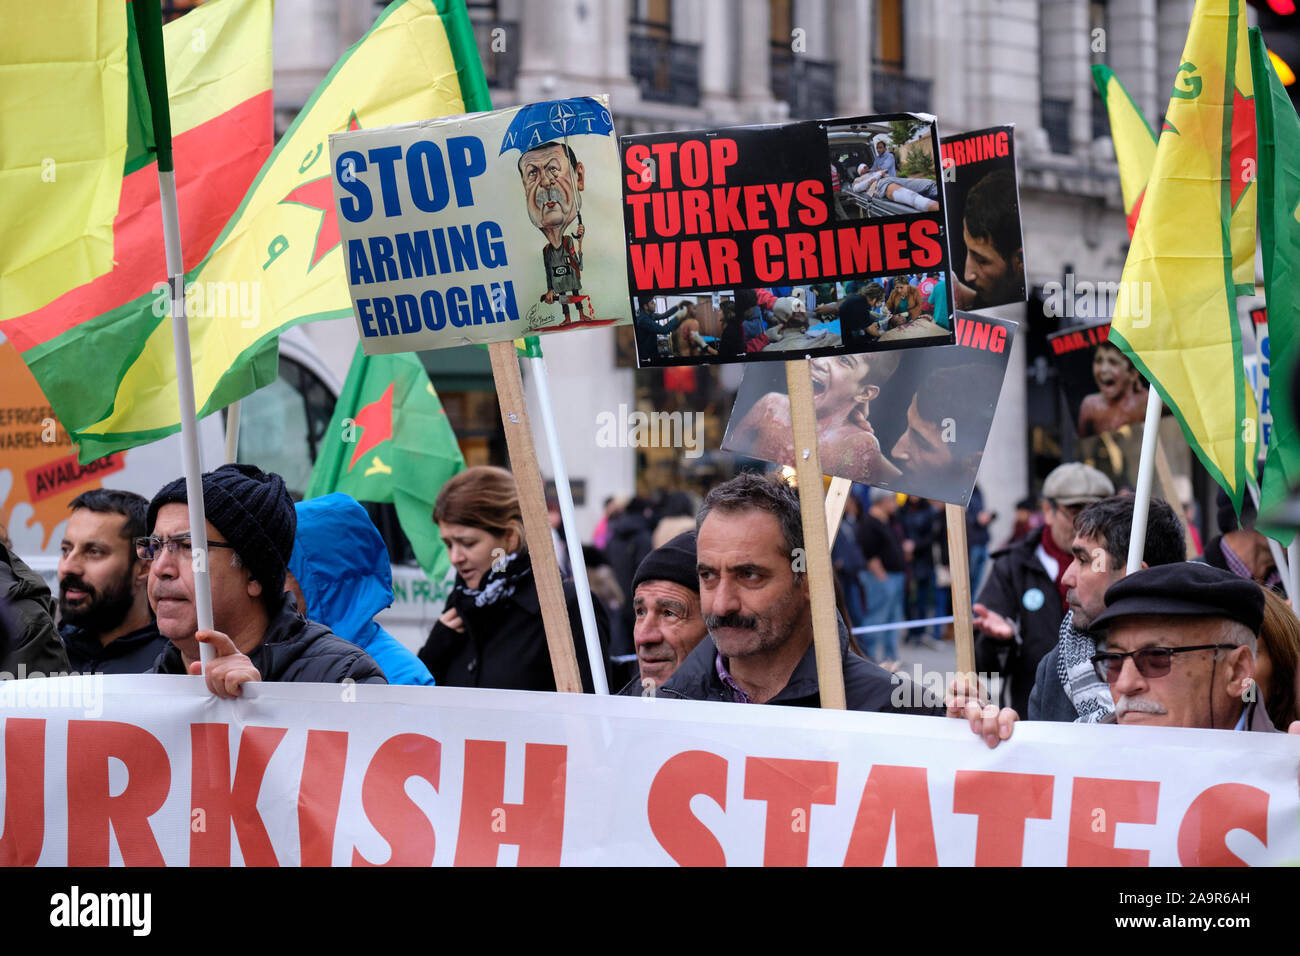 Londra, Regno Unito. 17 Nov 2019. I curdi britannici che hanno condotto un rally in via di Londra per denunciare l'invasione di Rojava da parte dello stato turco, e chiedono alle nazioni internazionali di agire e che l'opinione pubblica britannica sia solidale con la lotta curda. Foto Stock